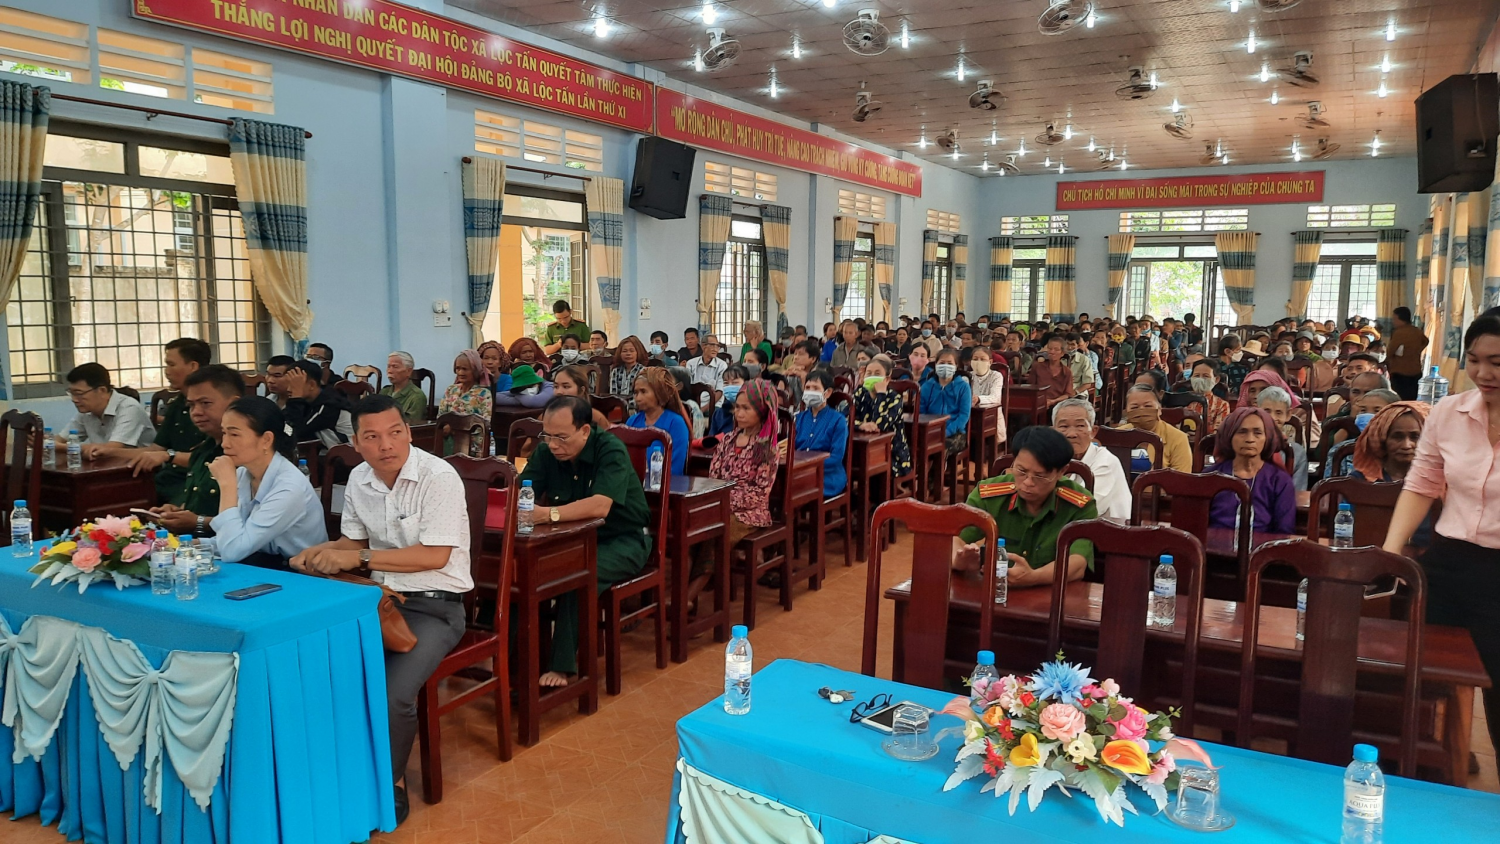 Công an huyện Lộc Ninh phối hợp tổ chức buổi tuyên truyền, phổ biến, giáo dục pháp luật cho nhân dân và cán bộ xã Lộc Tấn, huyện Lộc Ninh